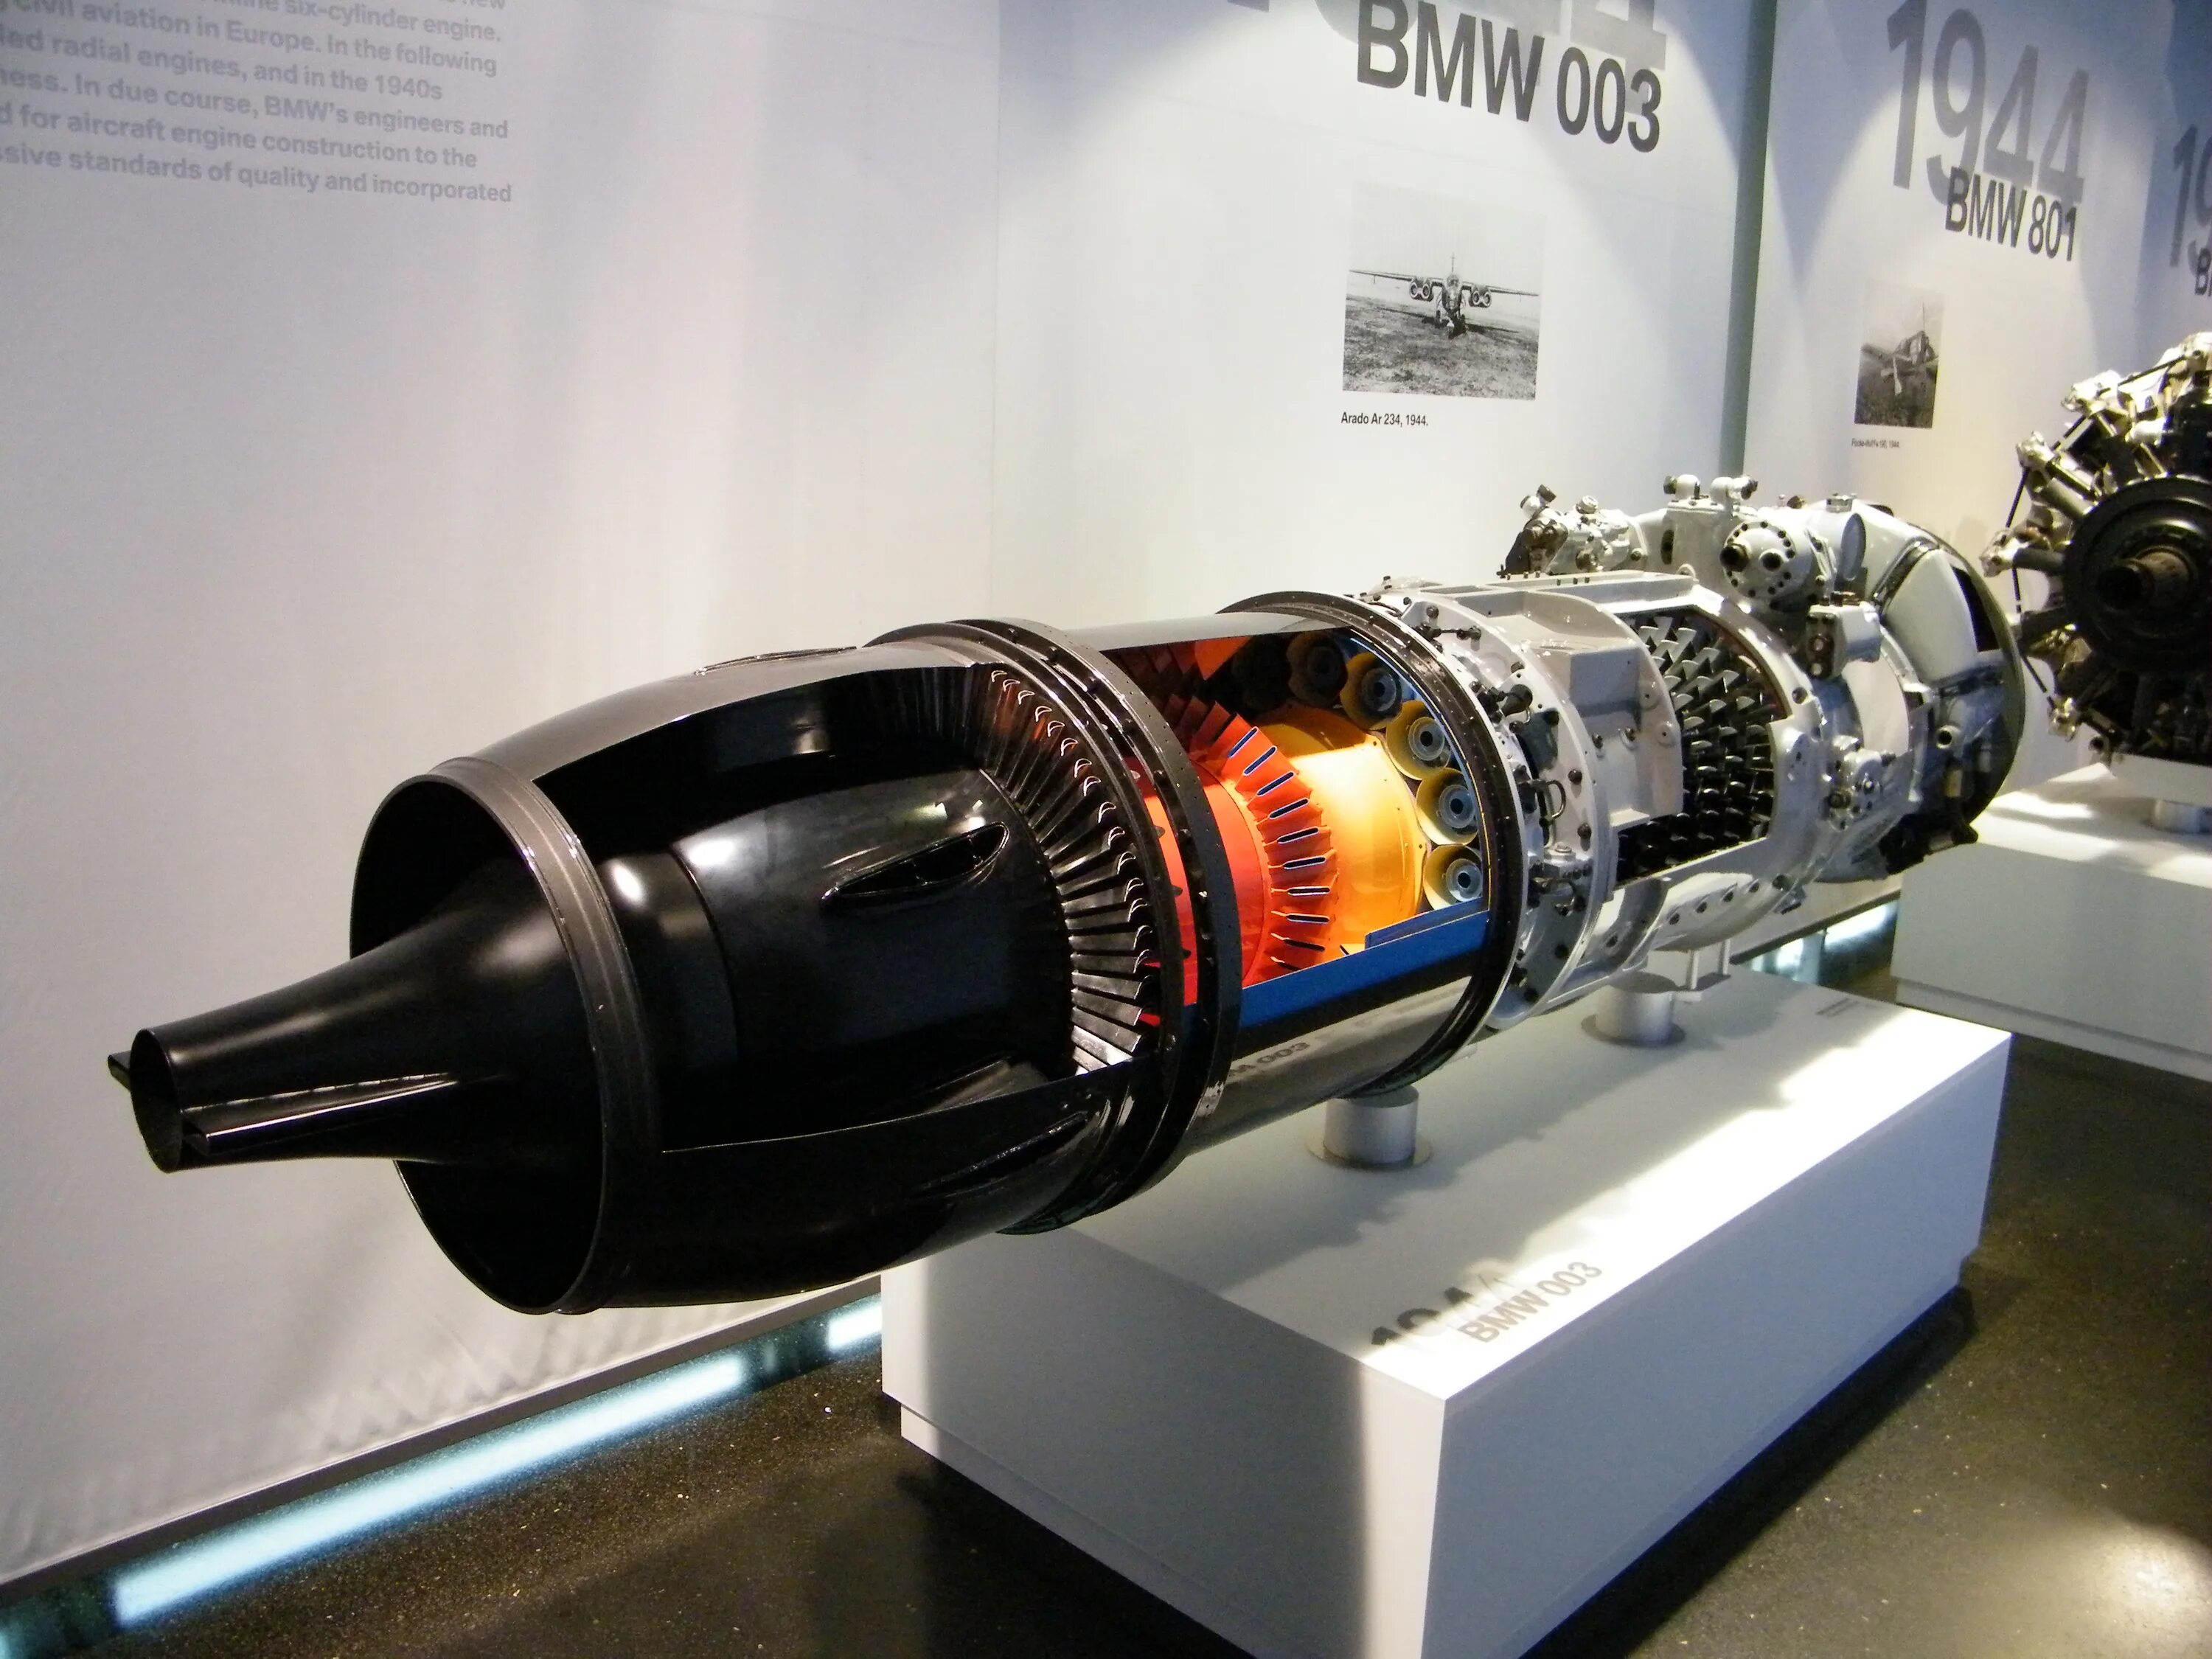 Турбореактивный двигатель BMW 003. ТРД BMW-003. BMW 109-003. Реактивные двигатели General Electric ВМВ. Создание ракетных двигателей